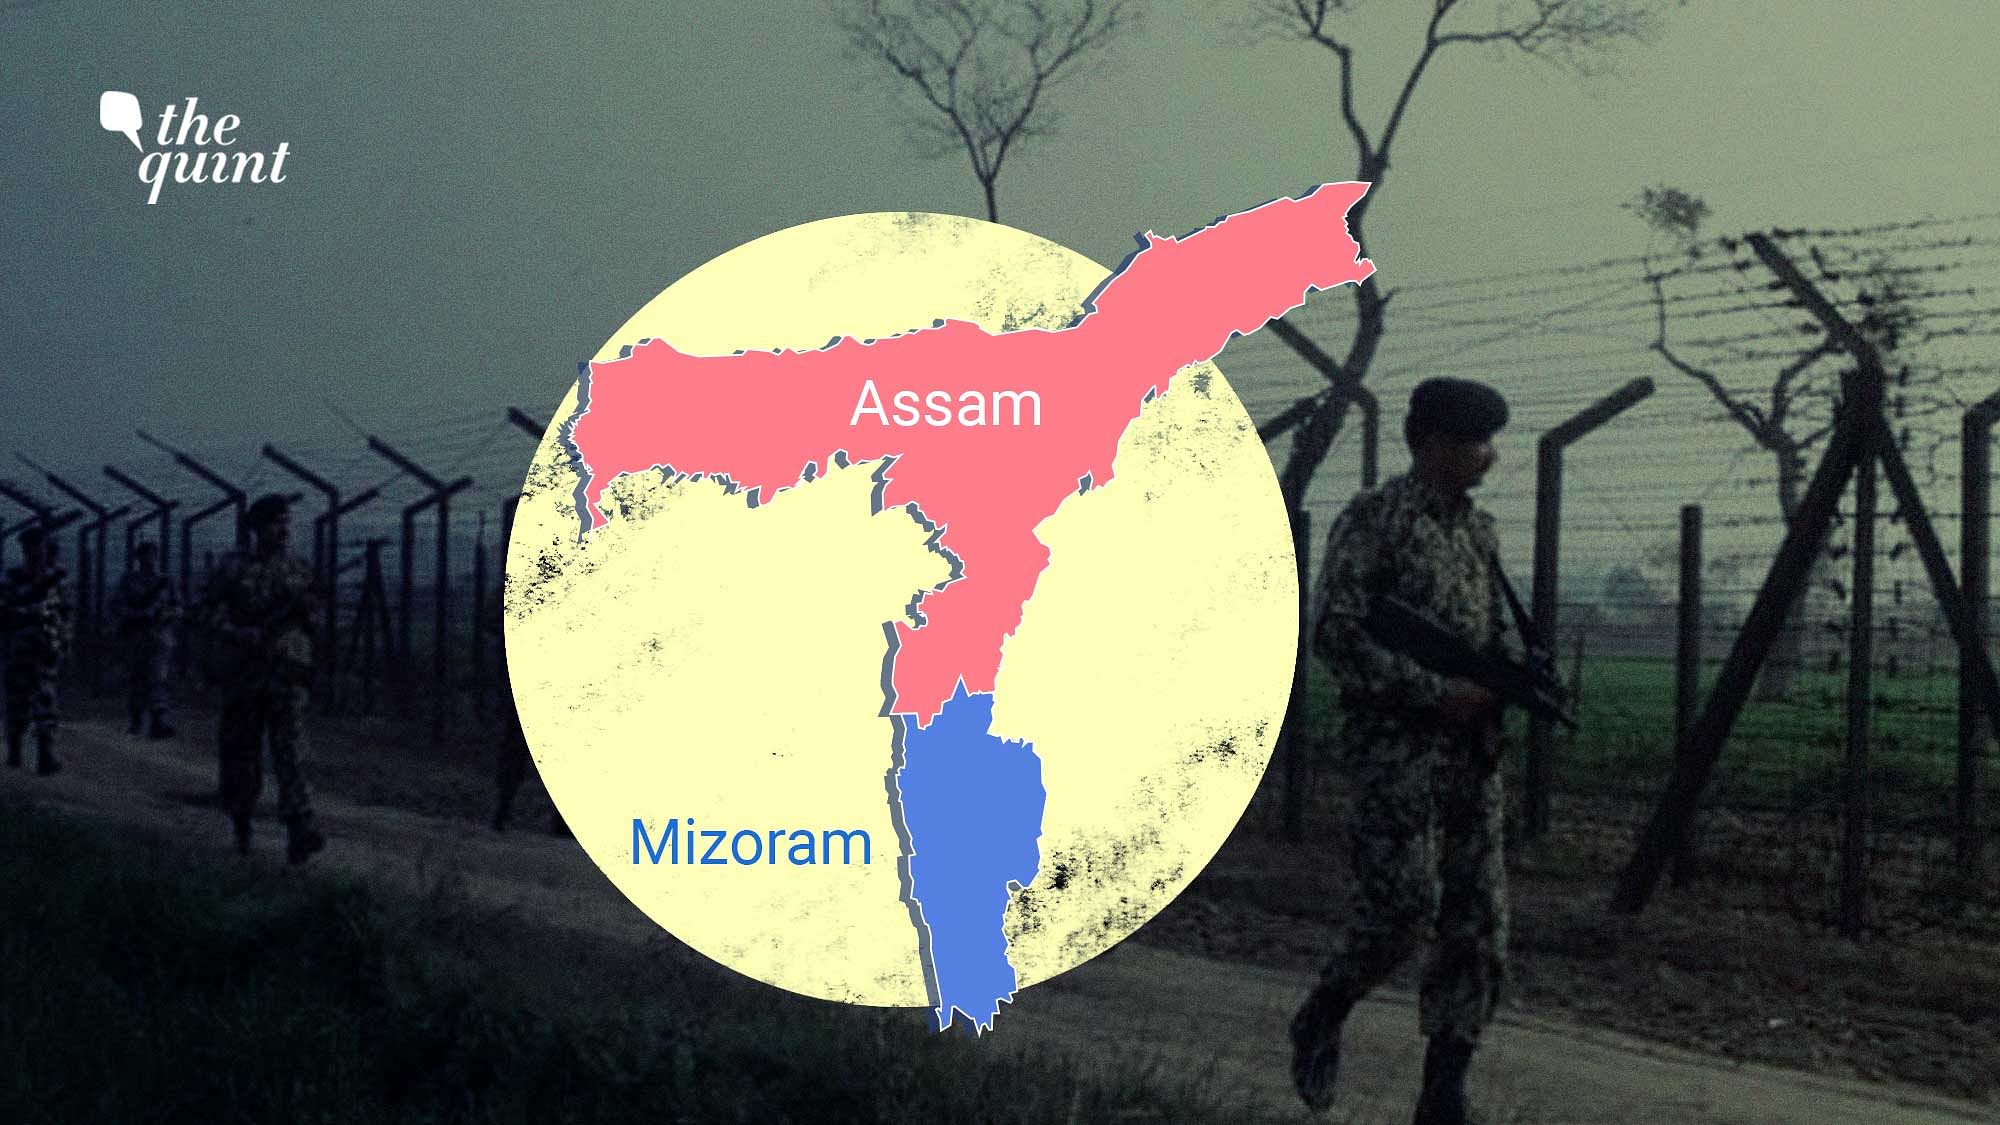 <div class="paragraphs"><p>Assam-Mizoram maps used for representation.</p></div>